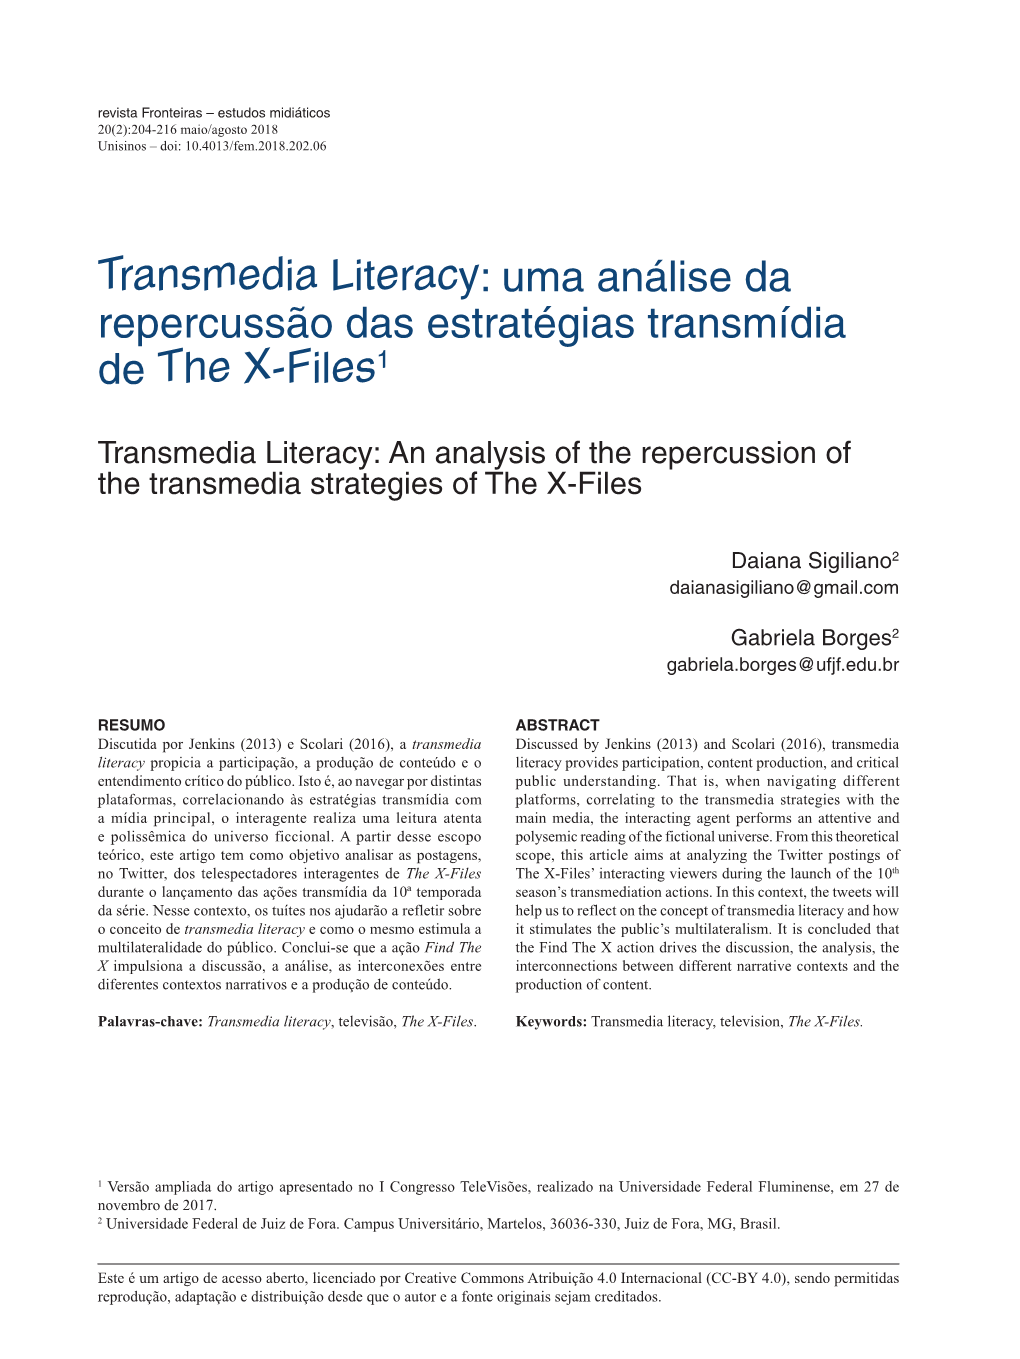 Transmedia Literacy: Uma Análise Da Repercussão Das Estratégias Transmídia De the X-Files1